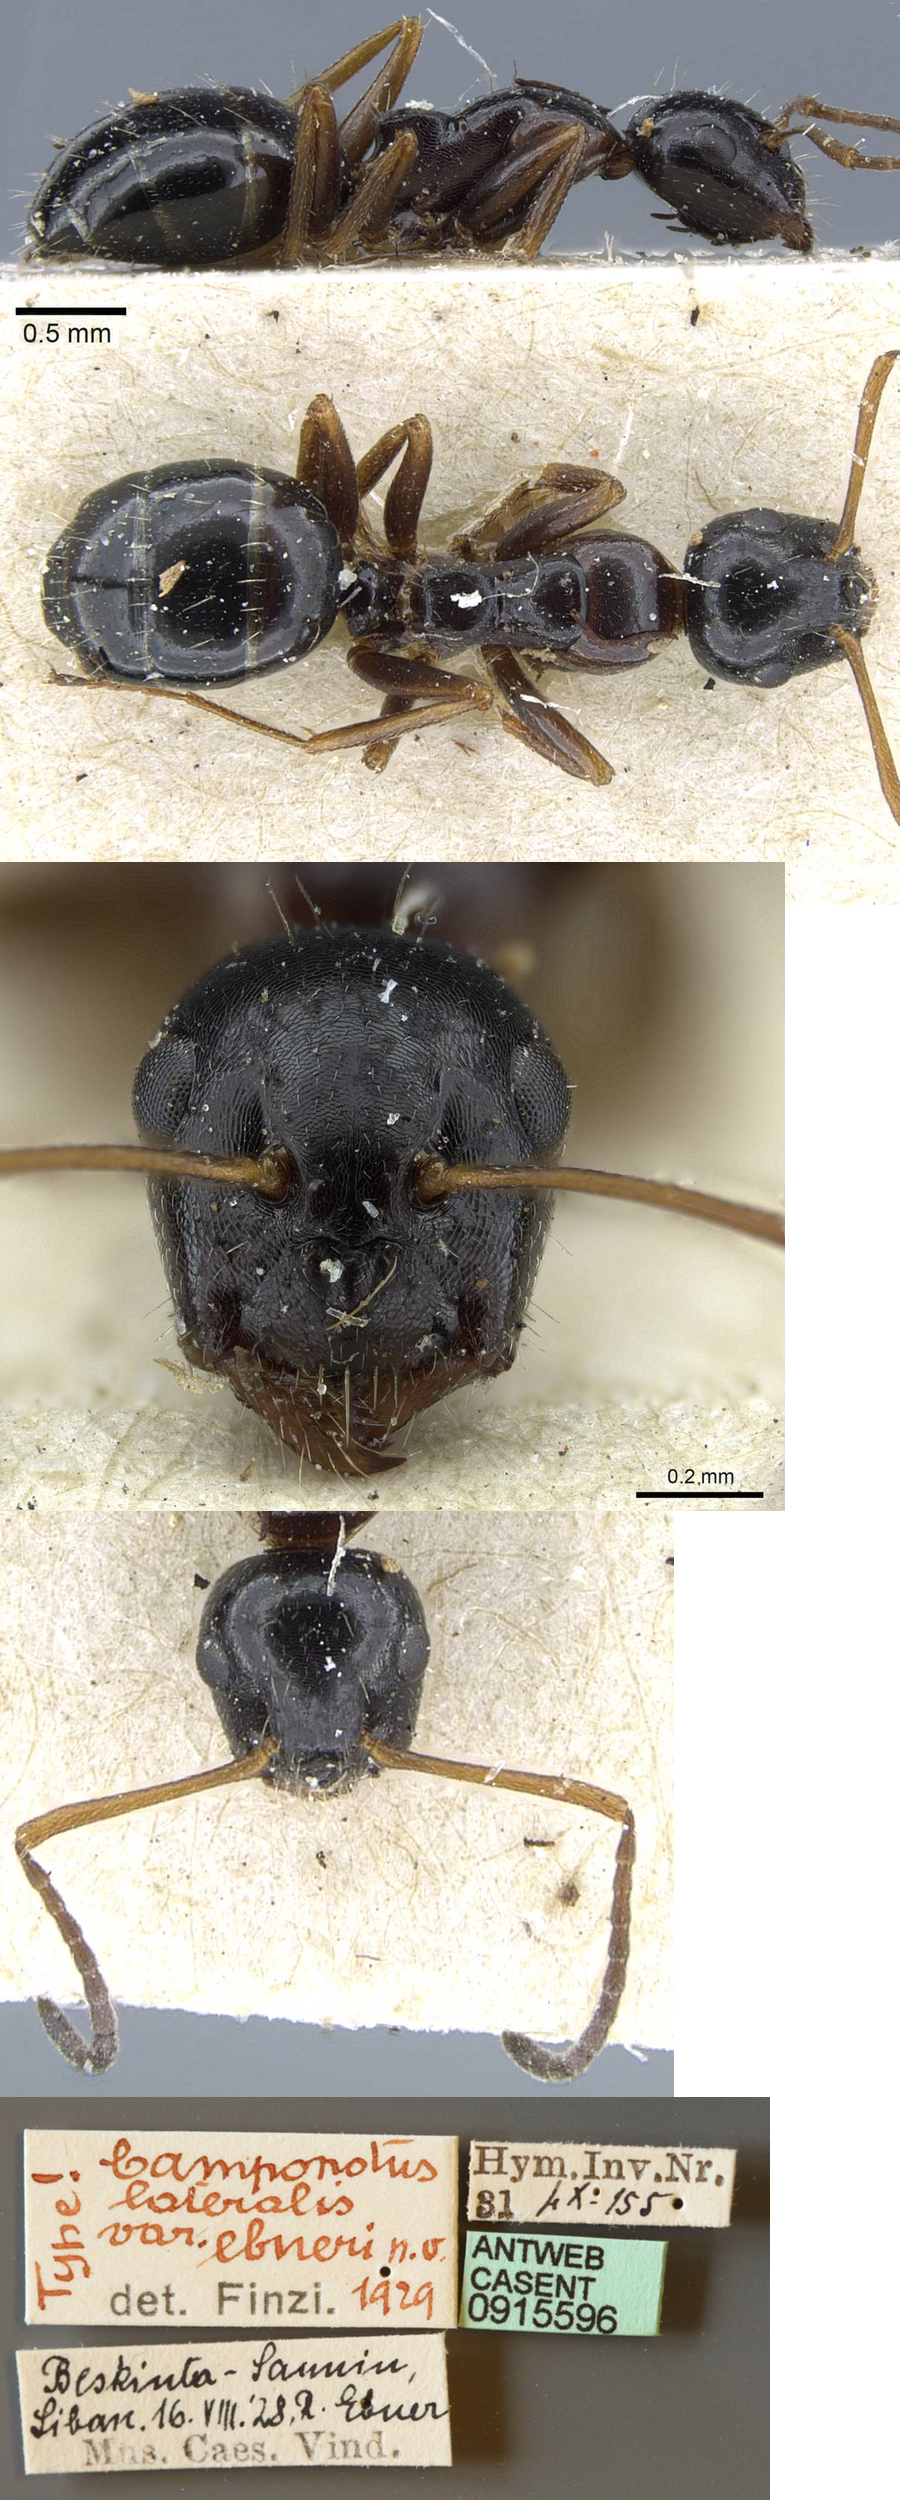 Camponotus piceus ebeninus minor